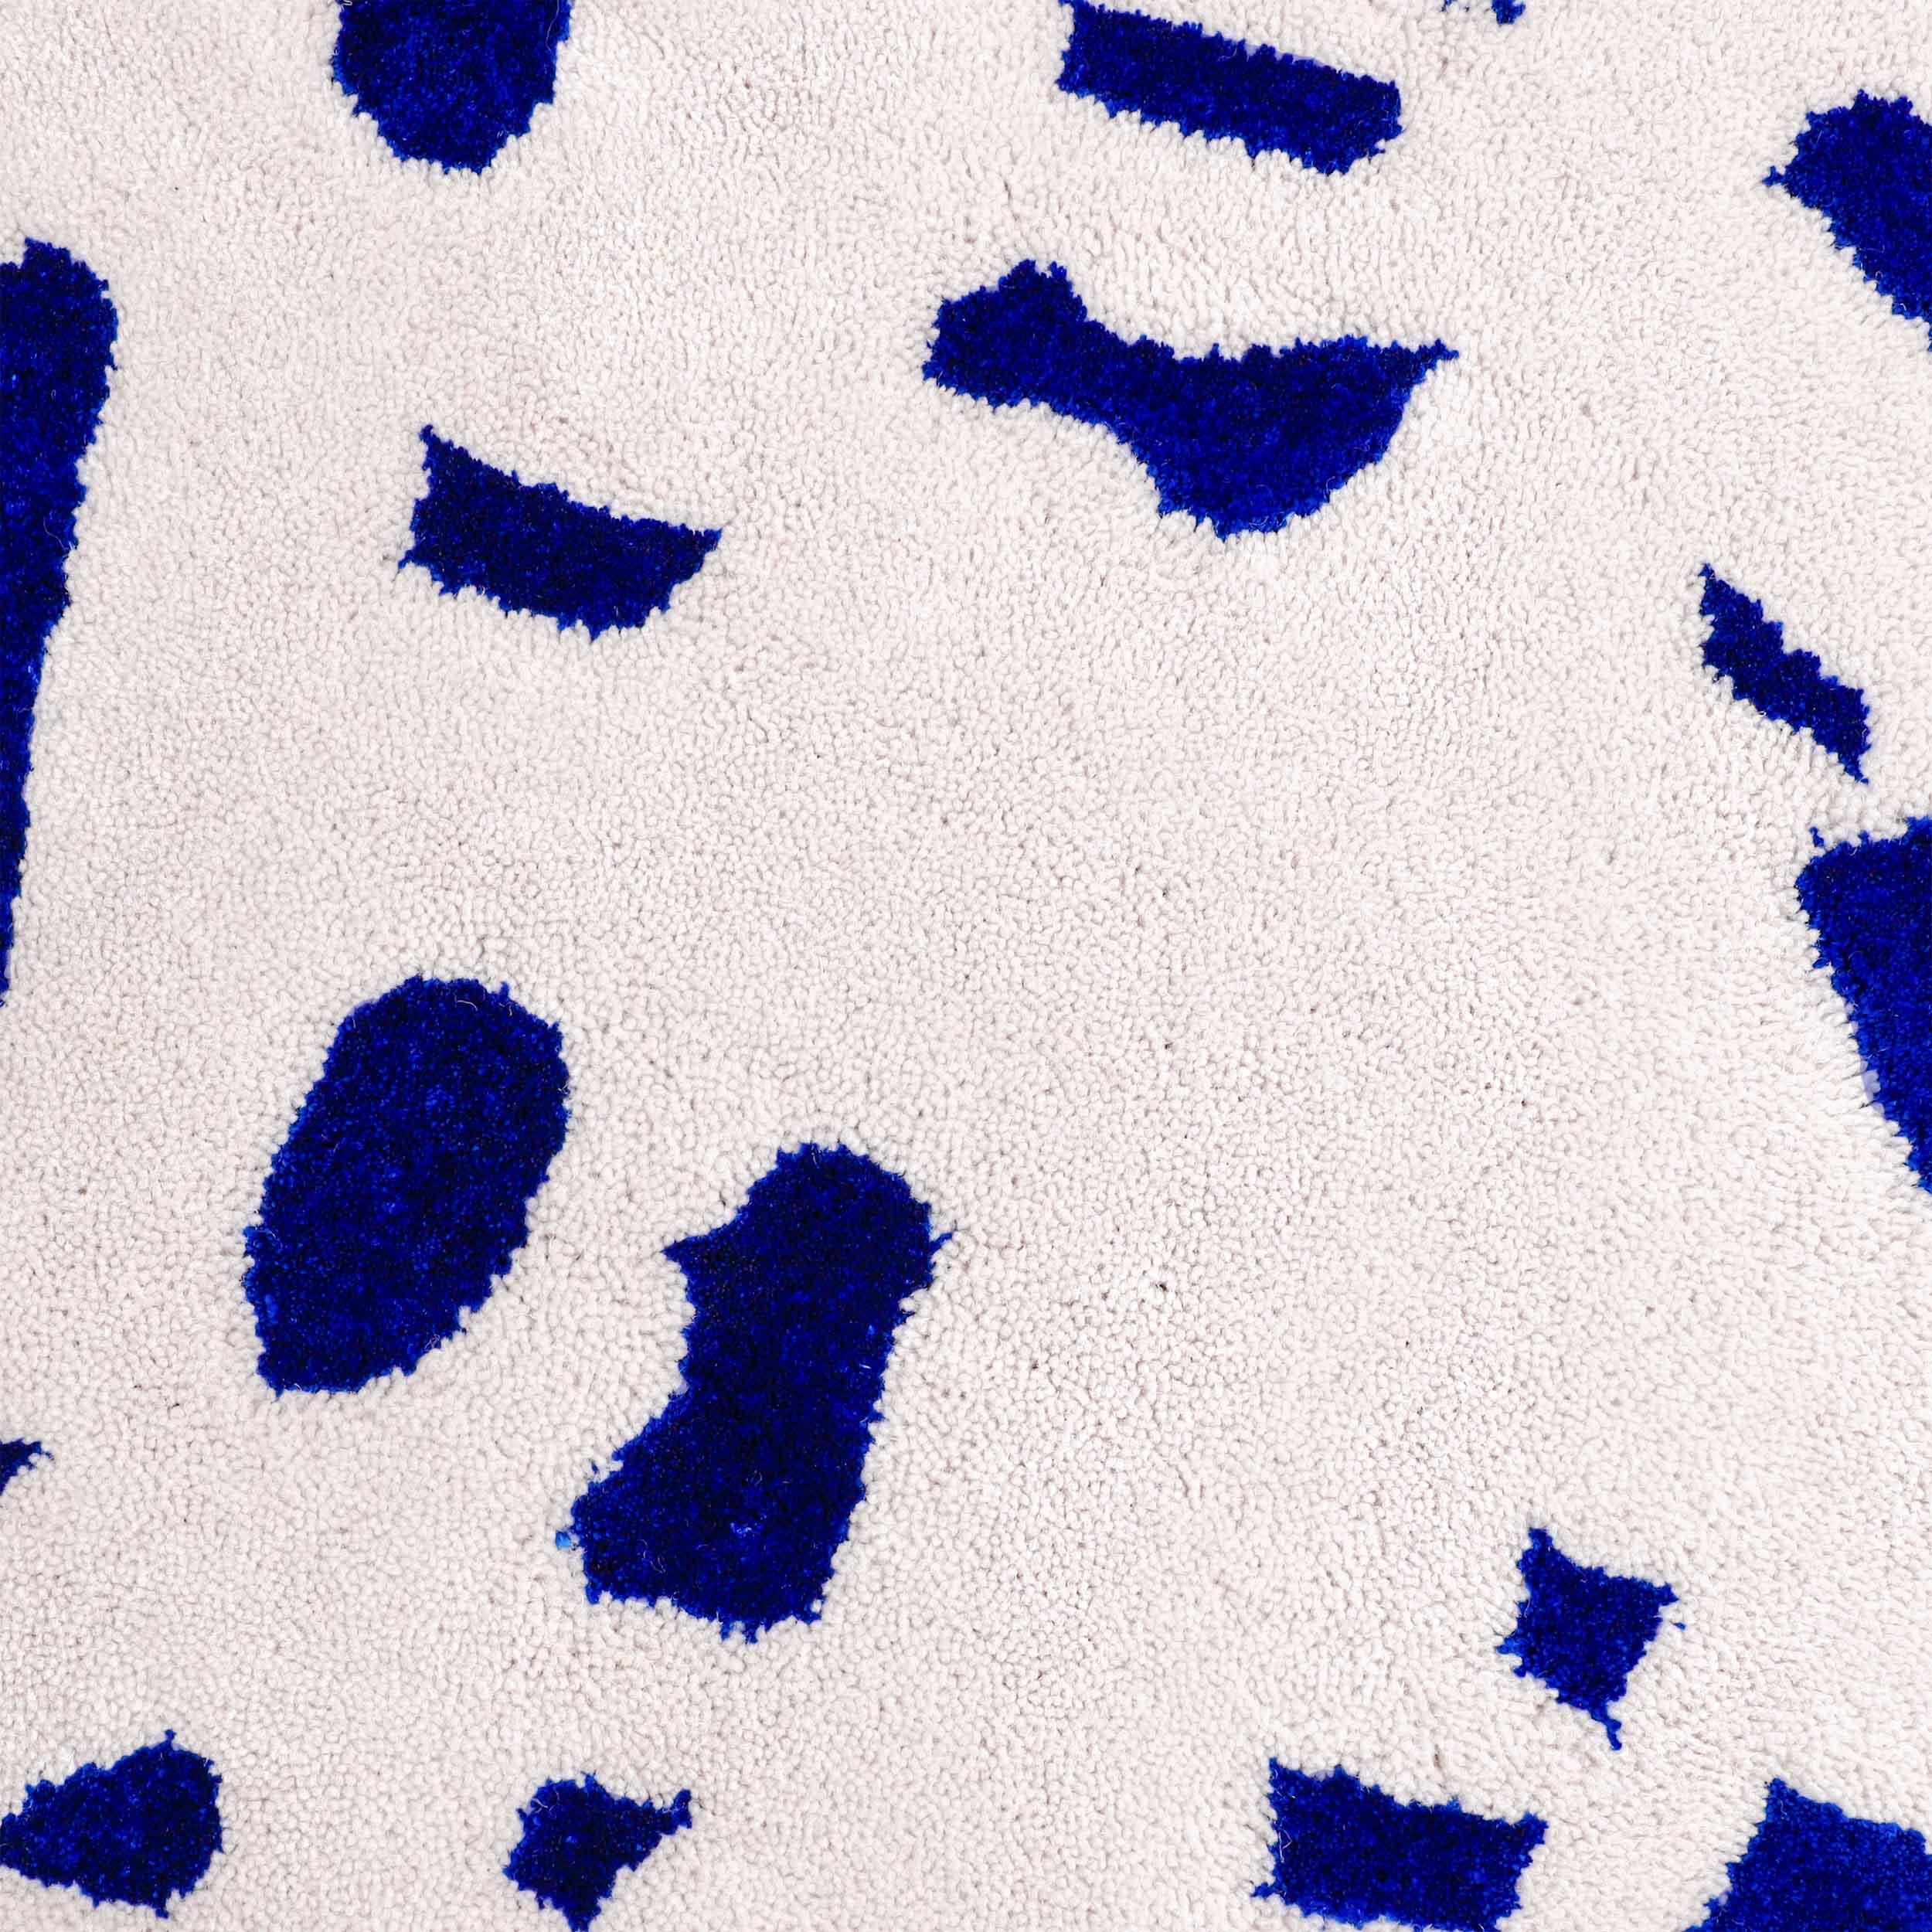 Speckled squiggle hat eine strapazierfähige Wolloberfläche mit einem Muster aus glänzenden blauen Viskose-Sprenkeln.

Größe: 7 x 10 Fuß 
MATERIAL: Wolle + Viskose
Farbe: Off-White/hellgrau + Electric Blue*
Hergestellt in Schweden

*Farben können